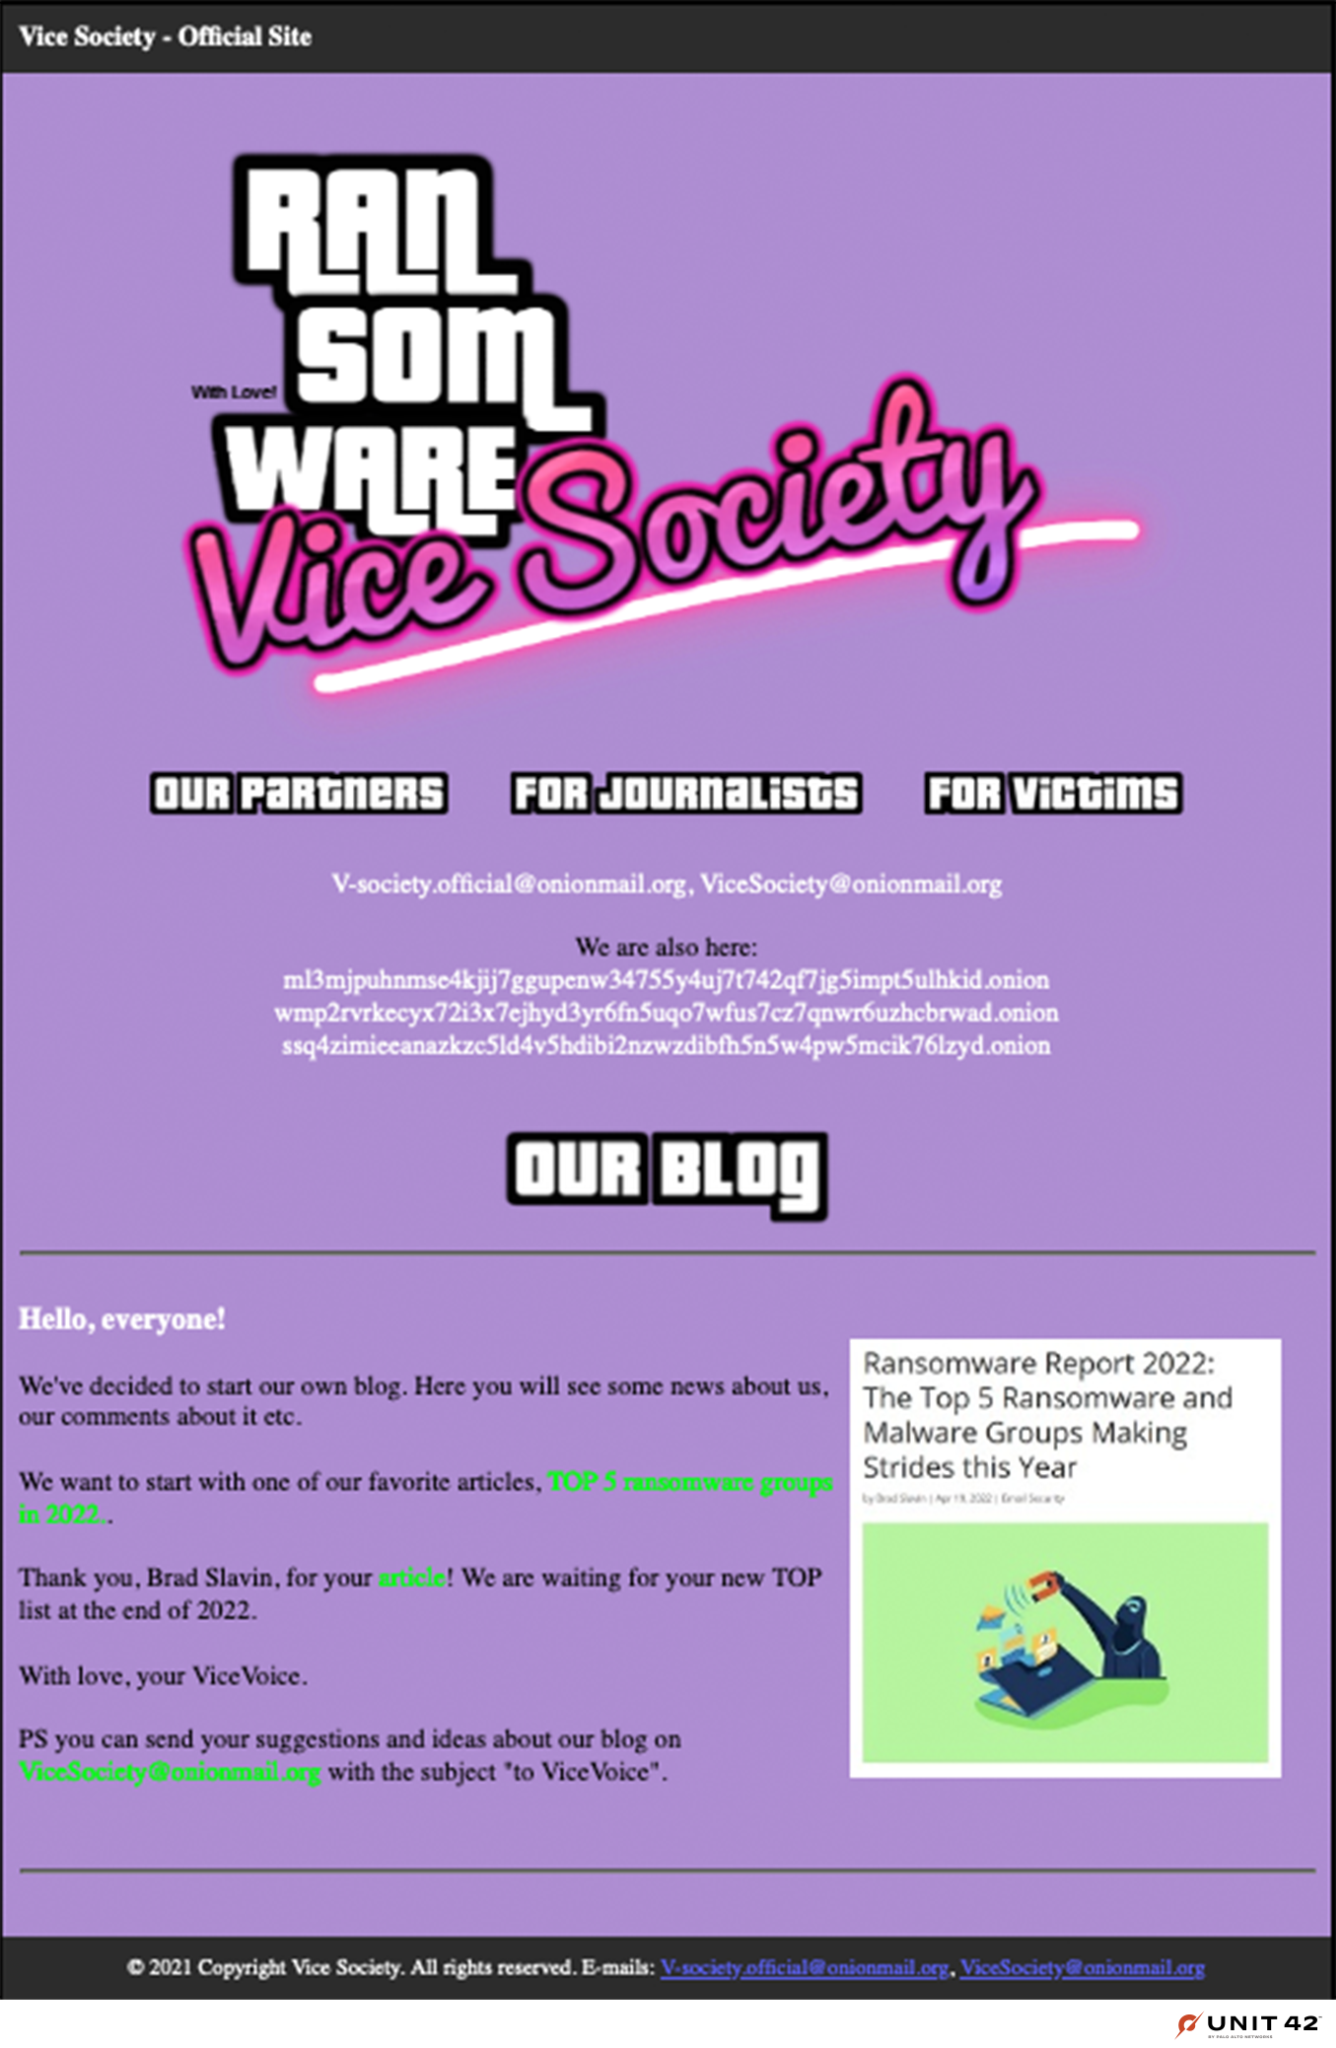 図9はVice Societyの「Our Blog」セクションのスクリーンショット。同攻撃グループについての報道をハイライトし、さらなる報道情報の提供を要請している。 